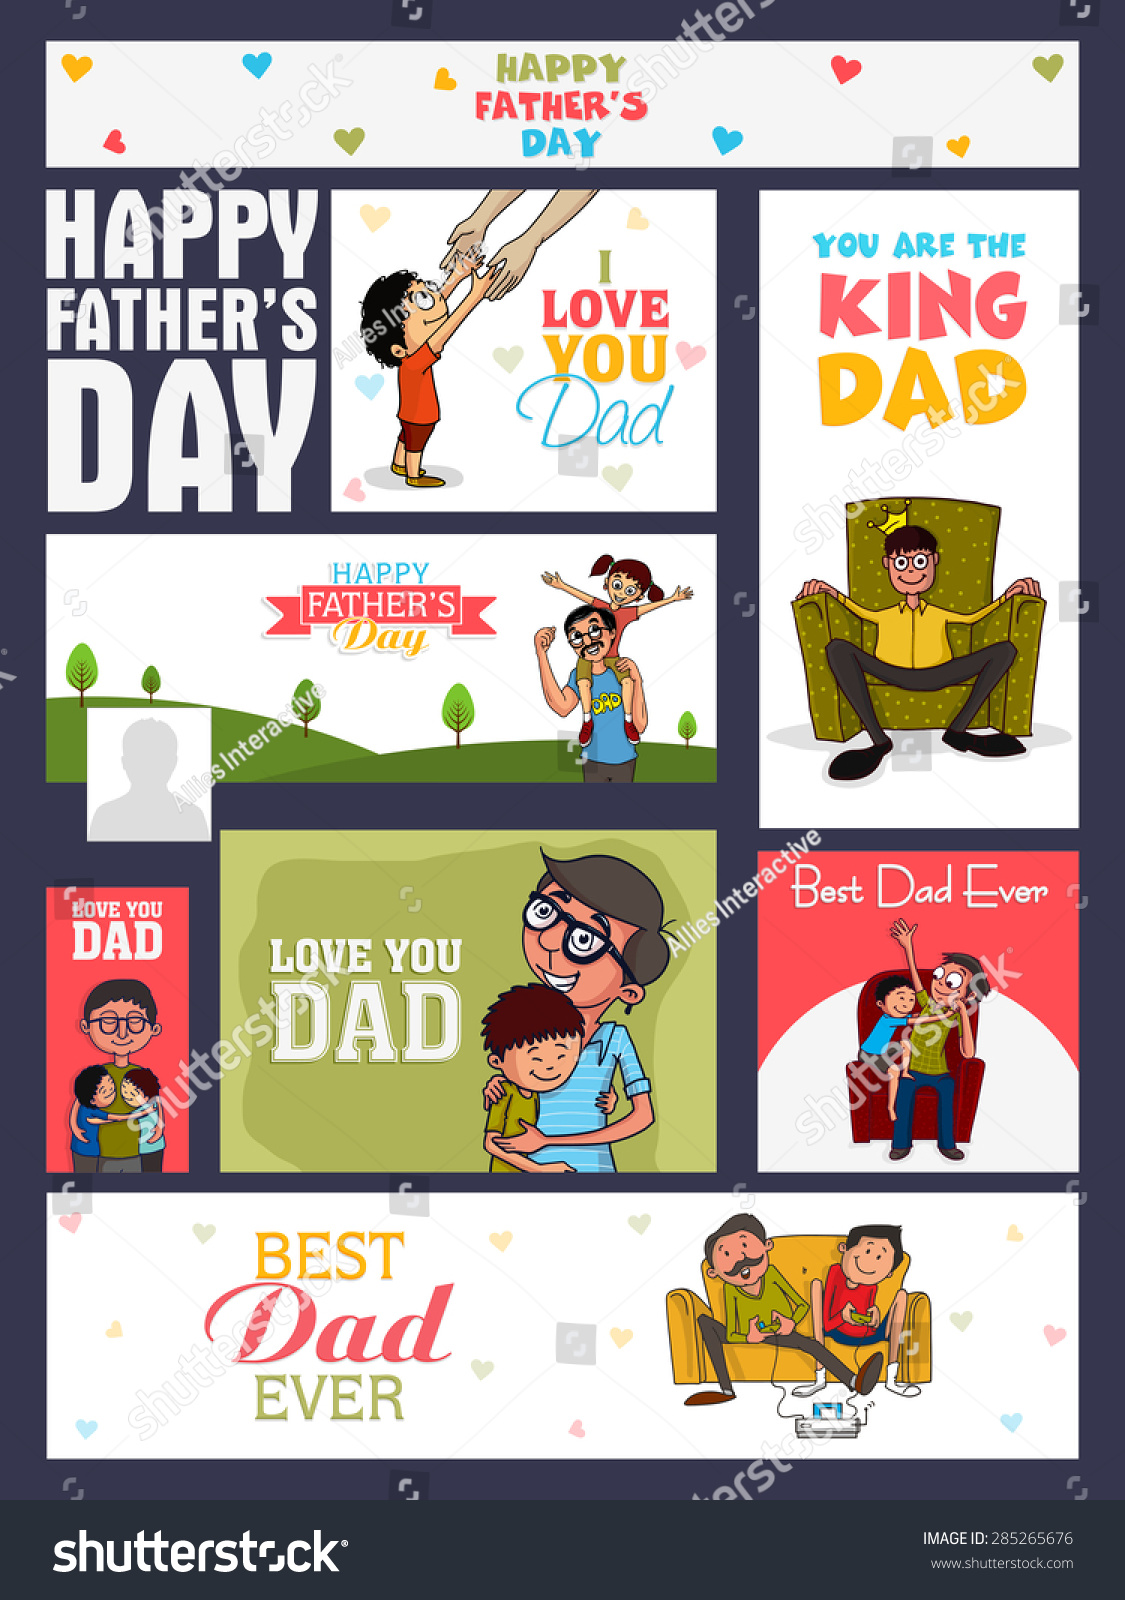 社交媒体广告、标题或横幅组与各种元素庆祝父